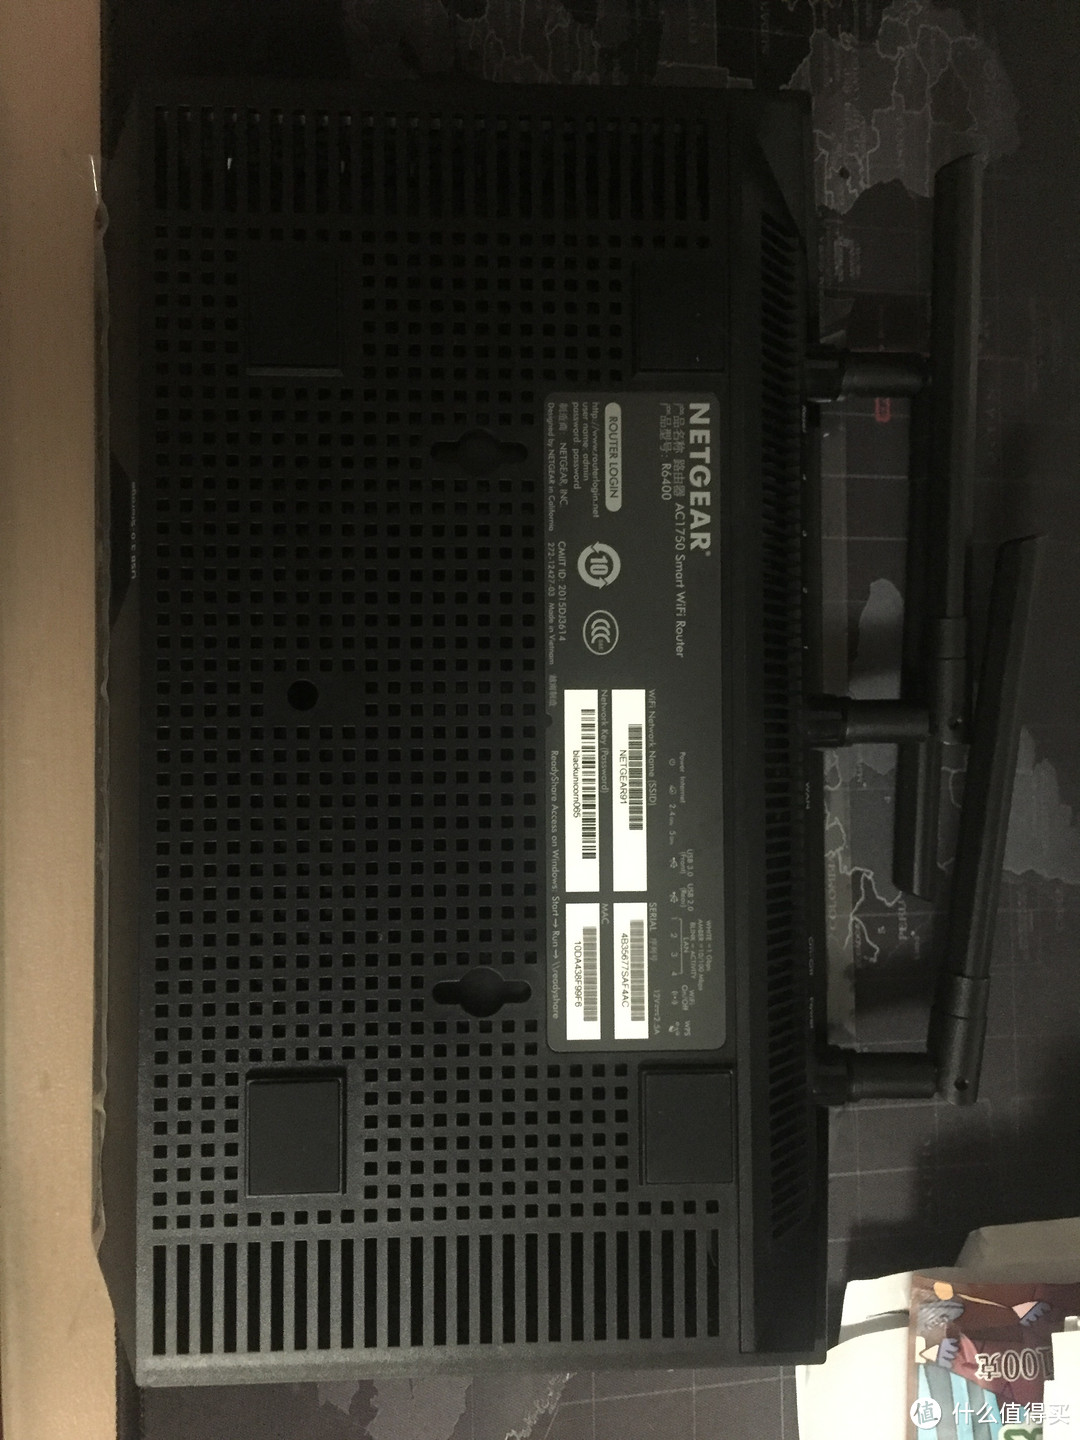 网件R6400无线路由器开箱及刷梅林固件